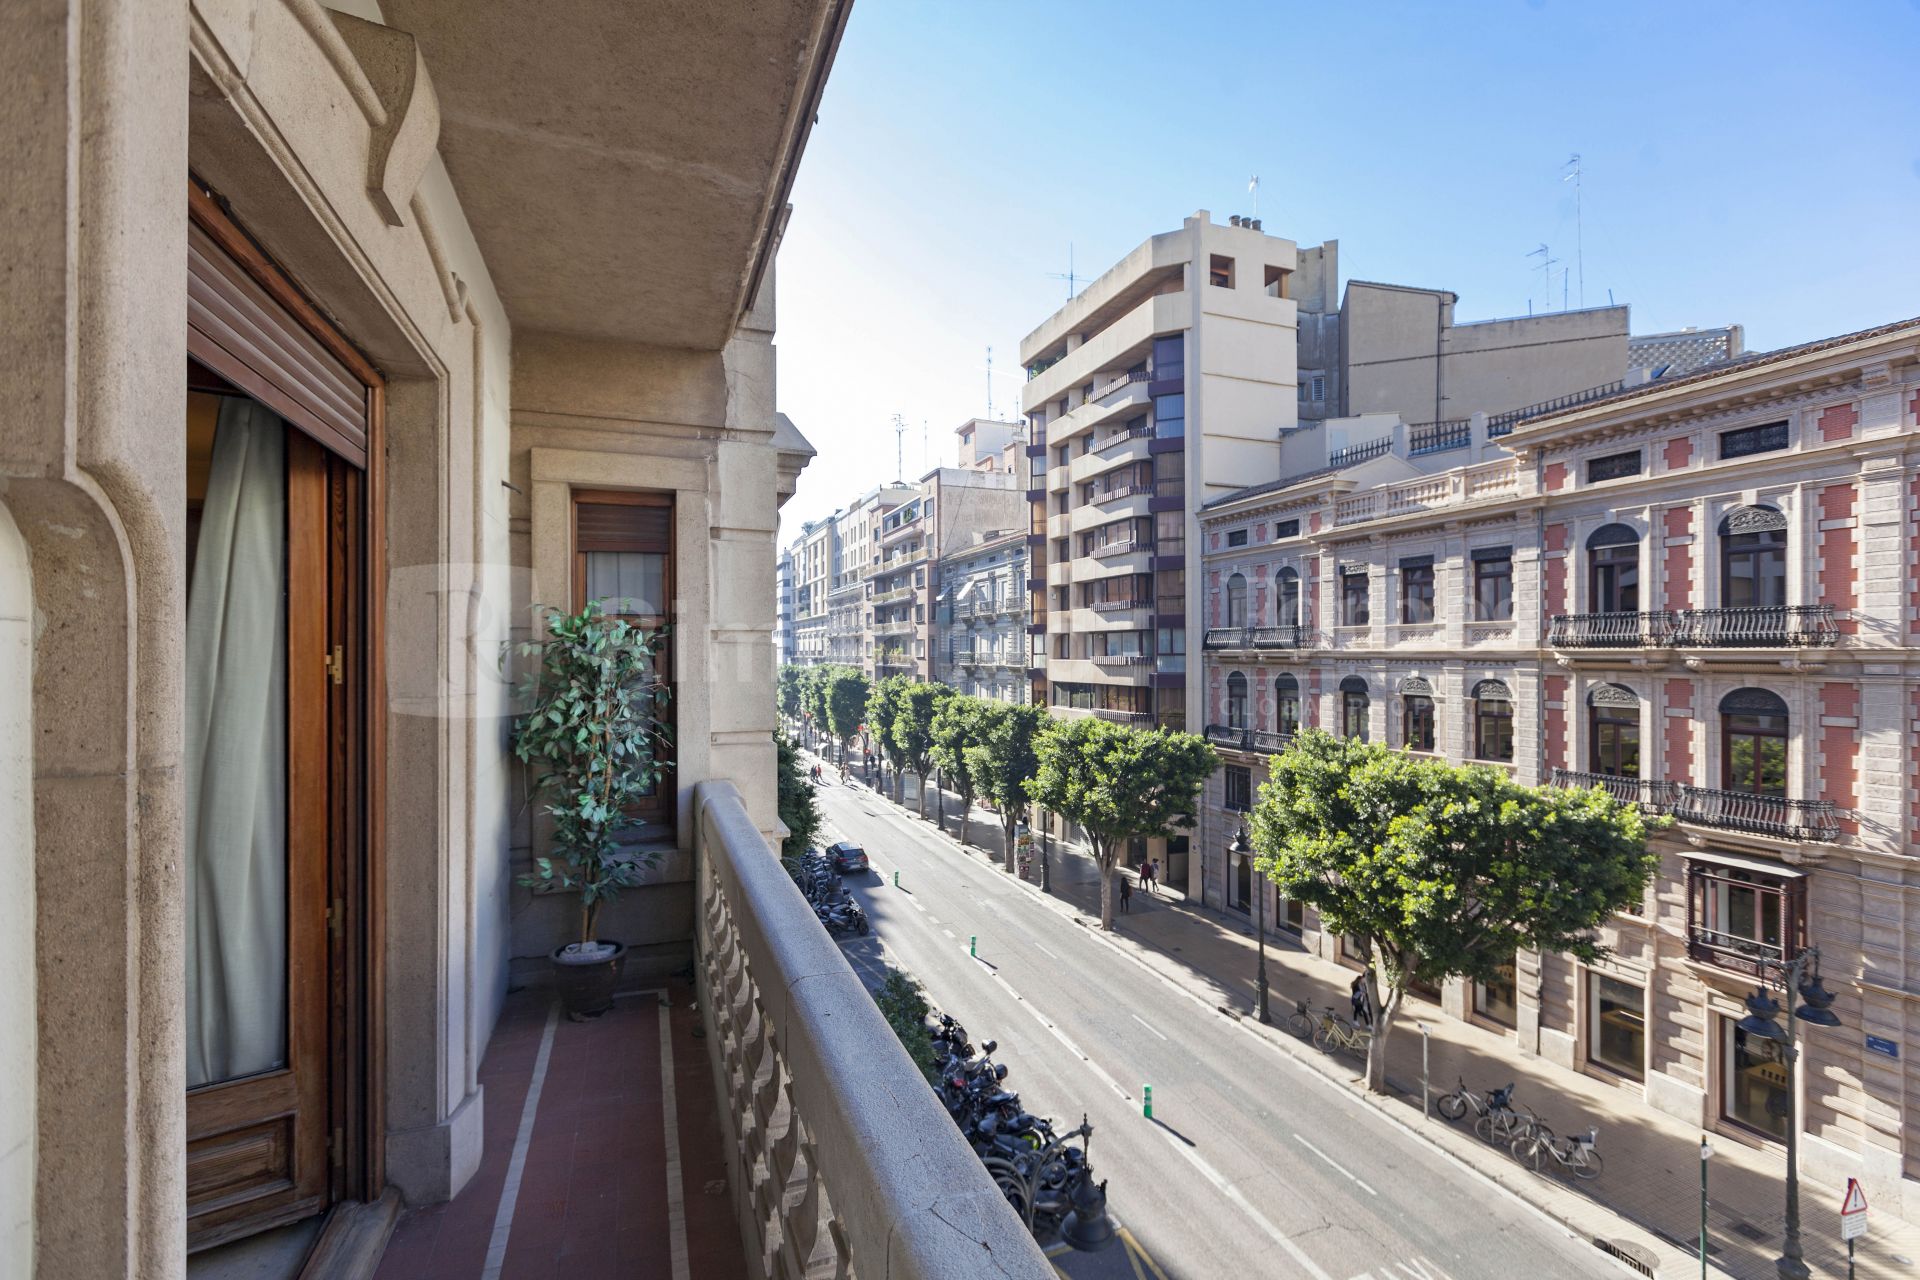 Exklusives Haus von mehr als 350 m2 in der Mitte der Calle de Colón de Valencia, mit mehreren Balkonen, einer Etage pro Etage und vollständig außen.